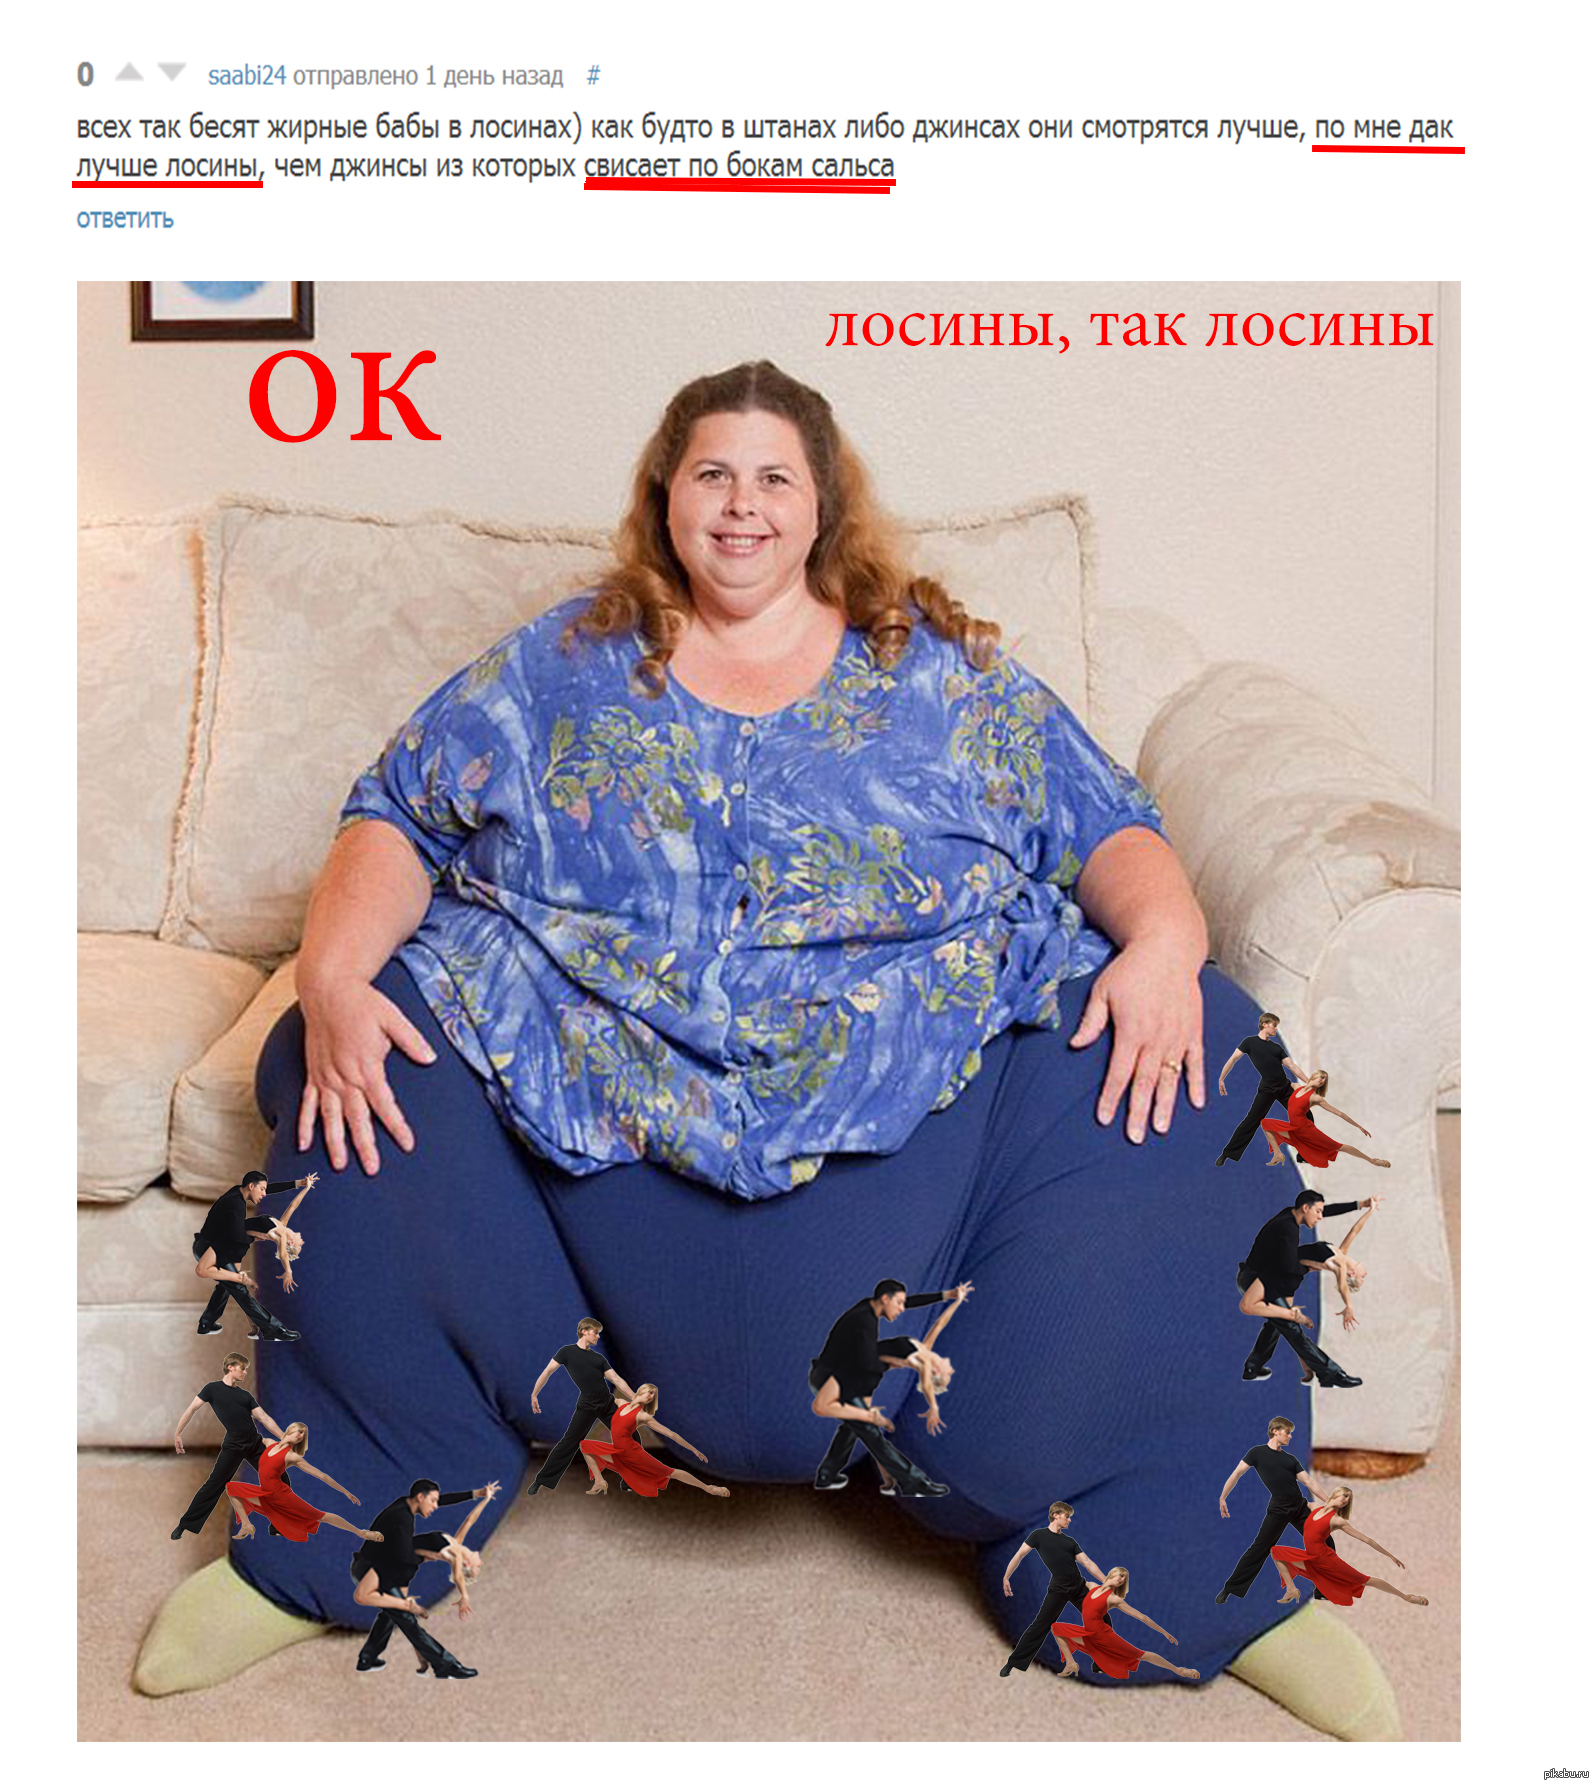 Сайт толстый женщина. Самая толстая женщина в мире.